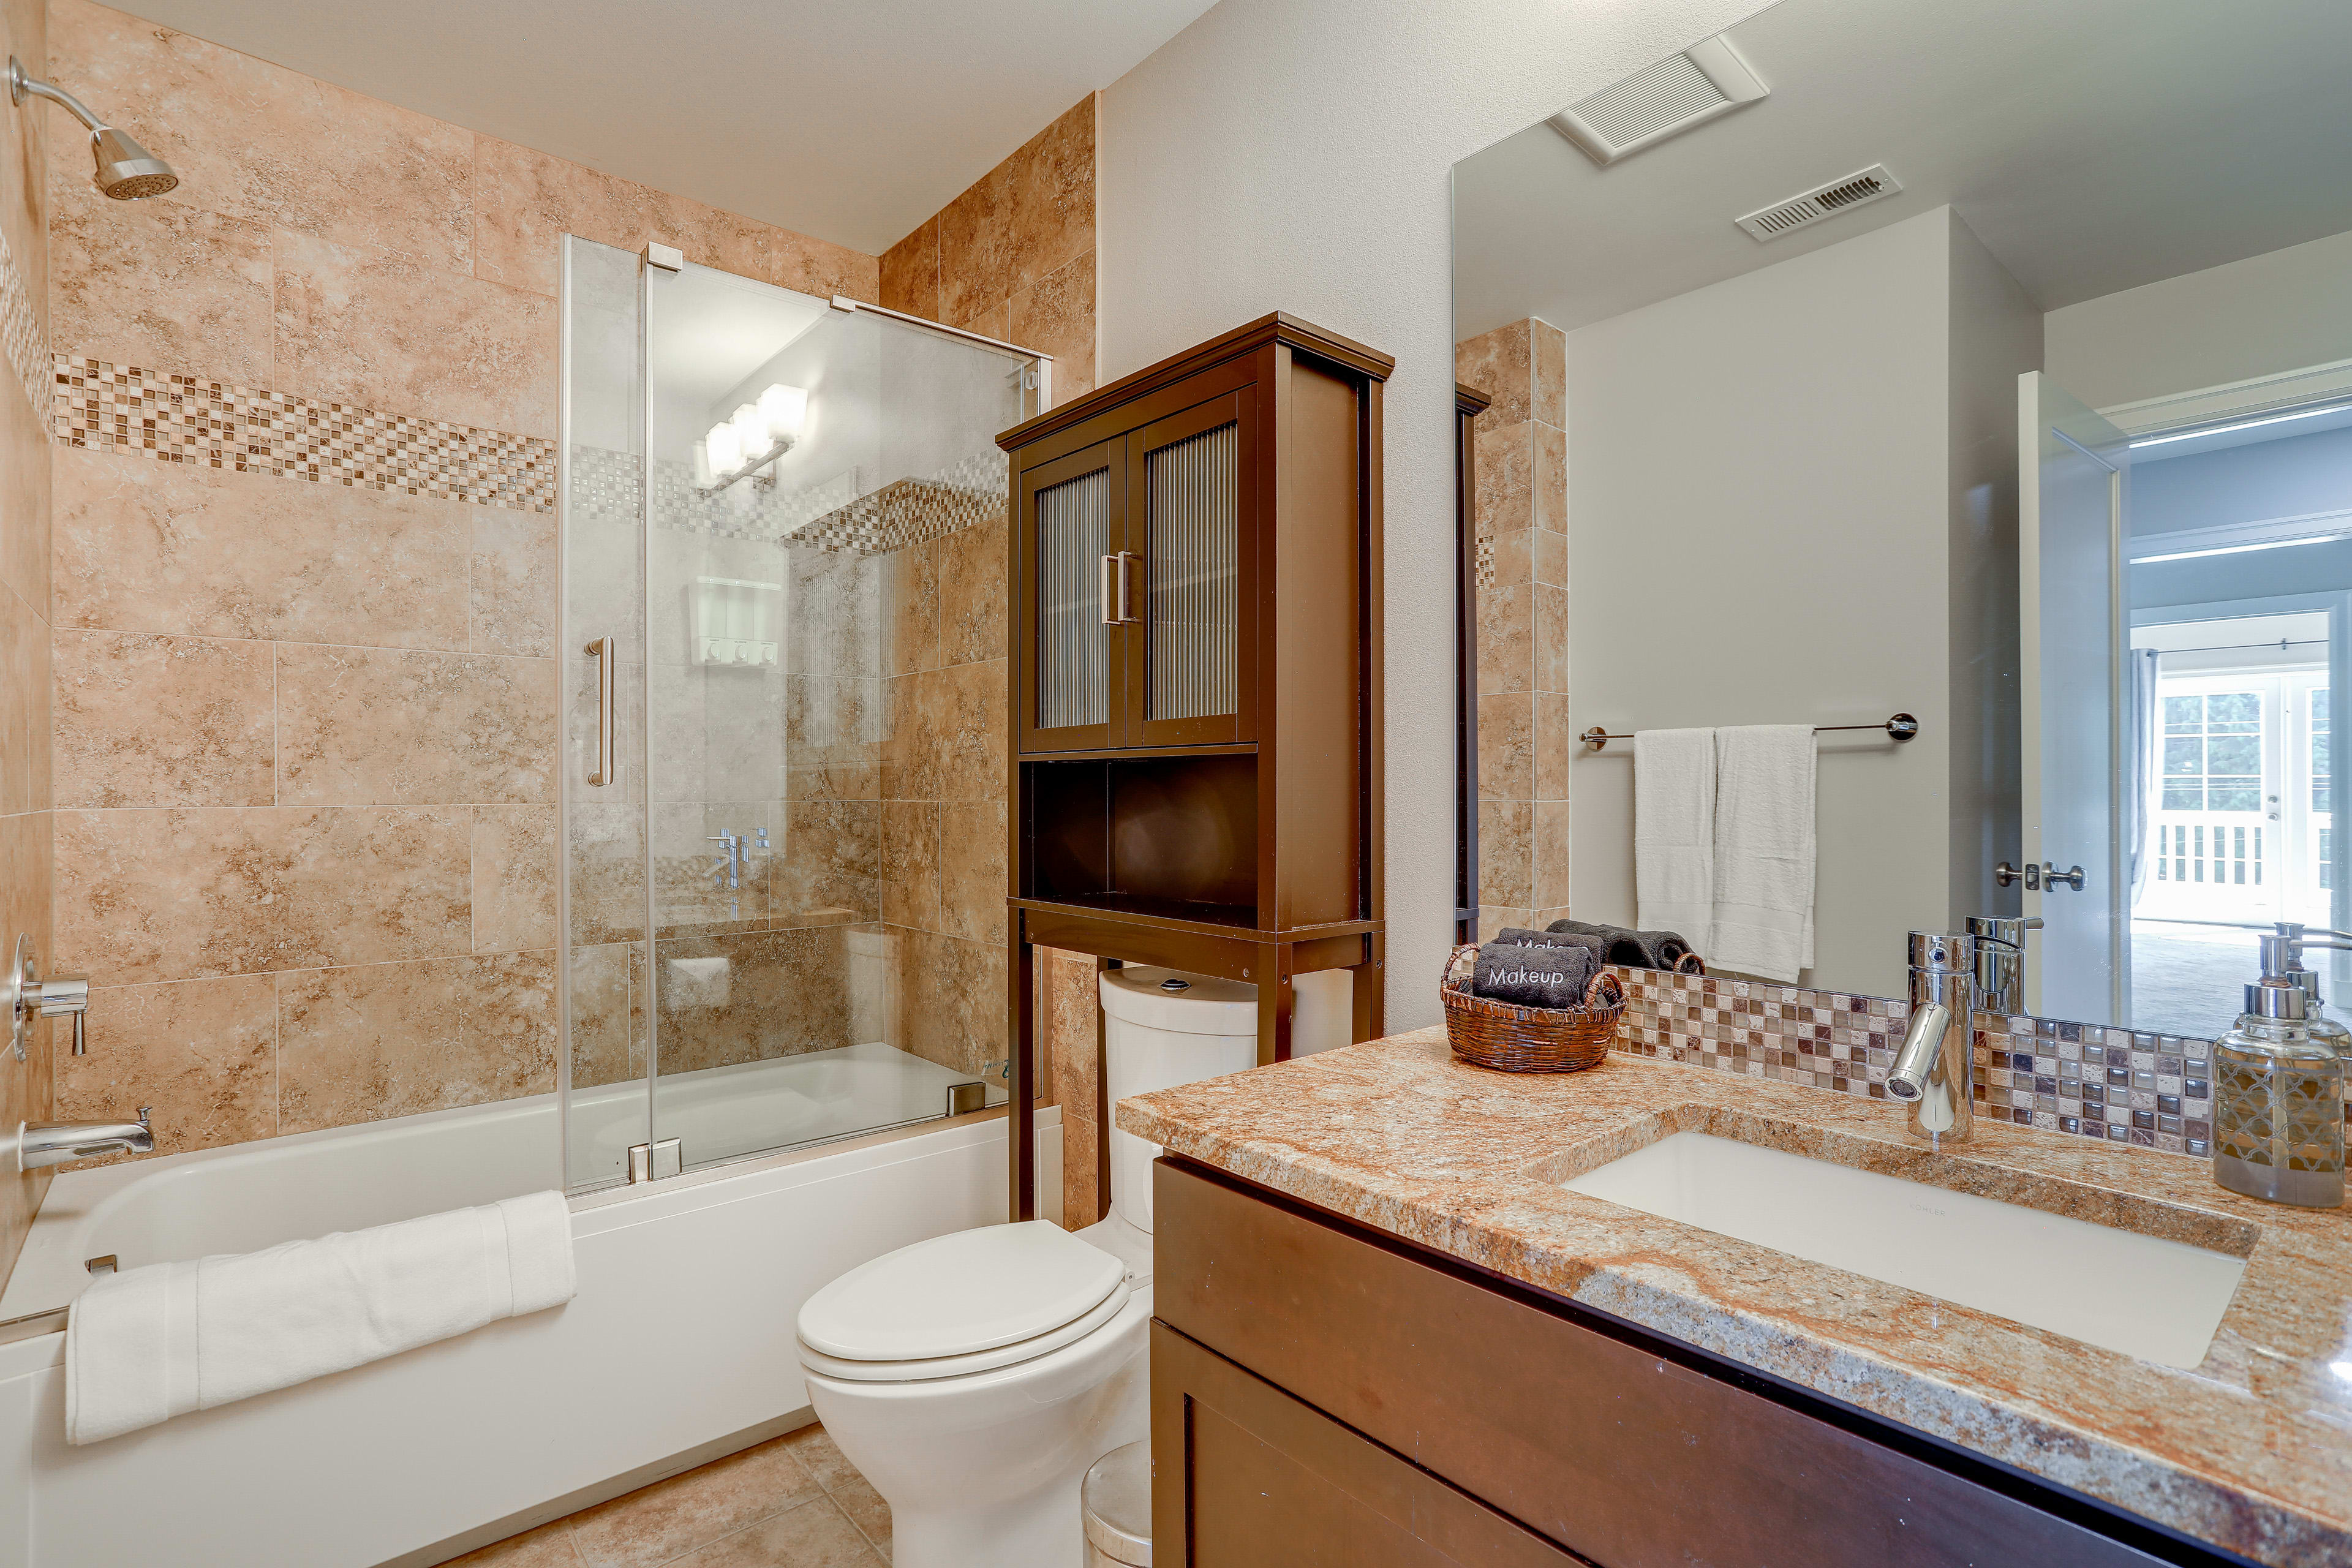 Full Bathroom | 2nd Floor | Shower/Tub Combo | Hair Dryer